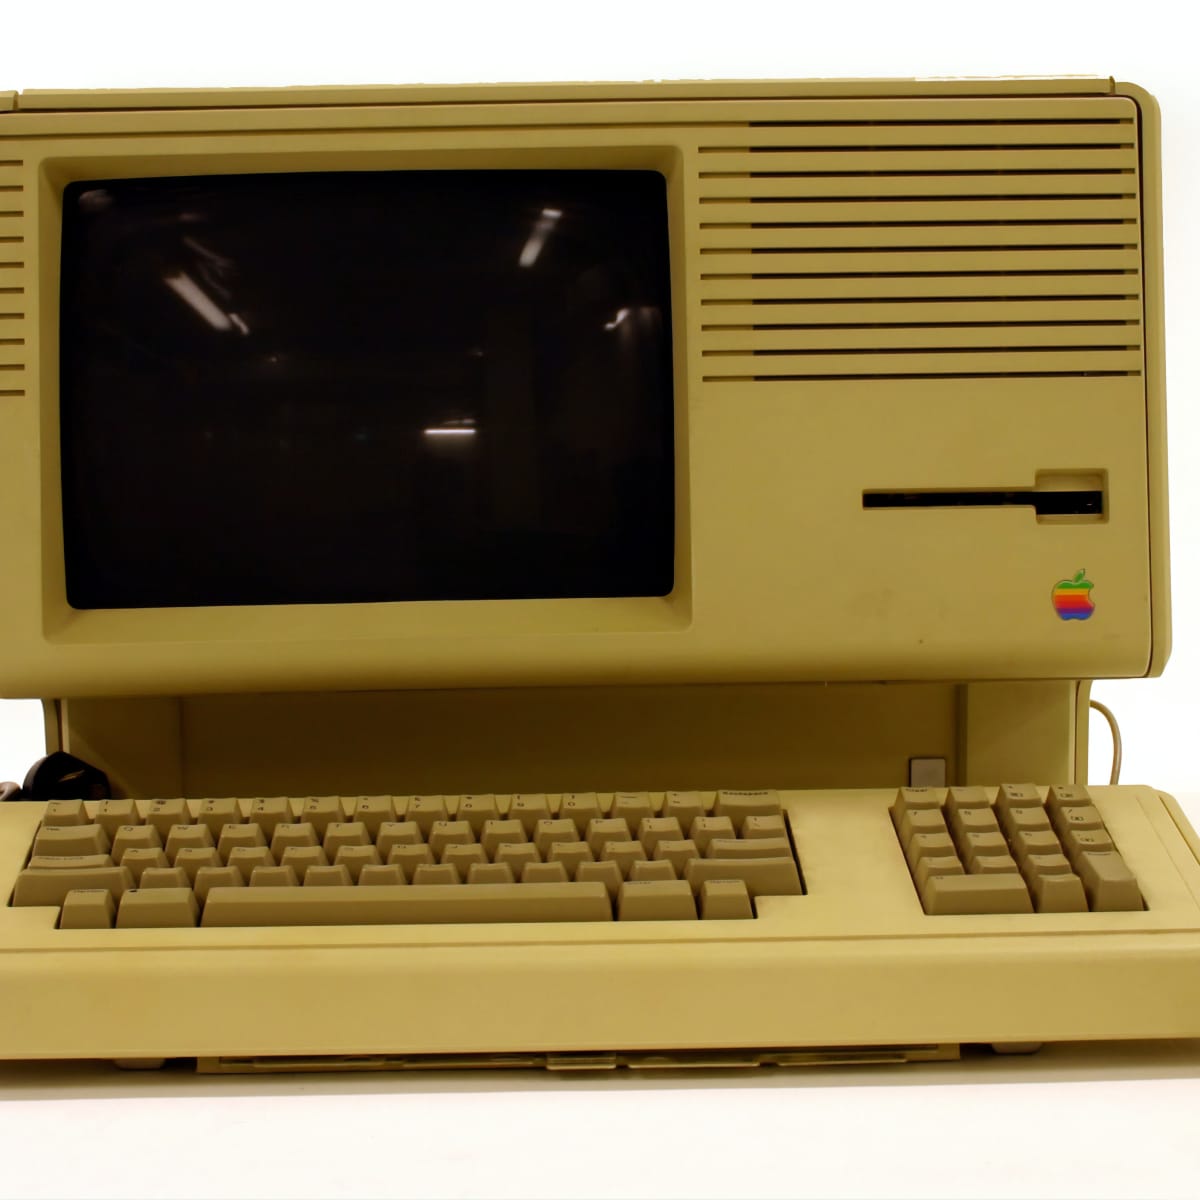 Raak verstrikt Afhankelijk zwaarlijvigheid How Much Is Your Old Vintage Apple Mac Computer Worth? - TurboFuture